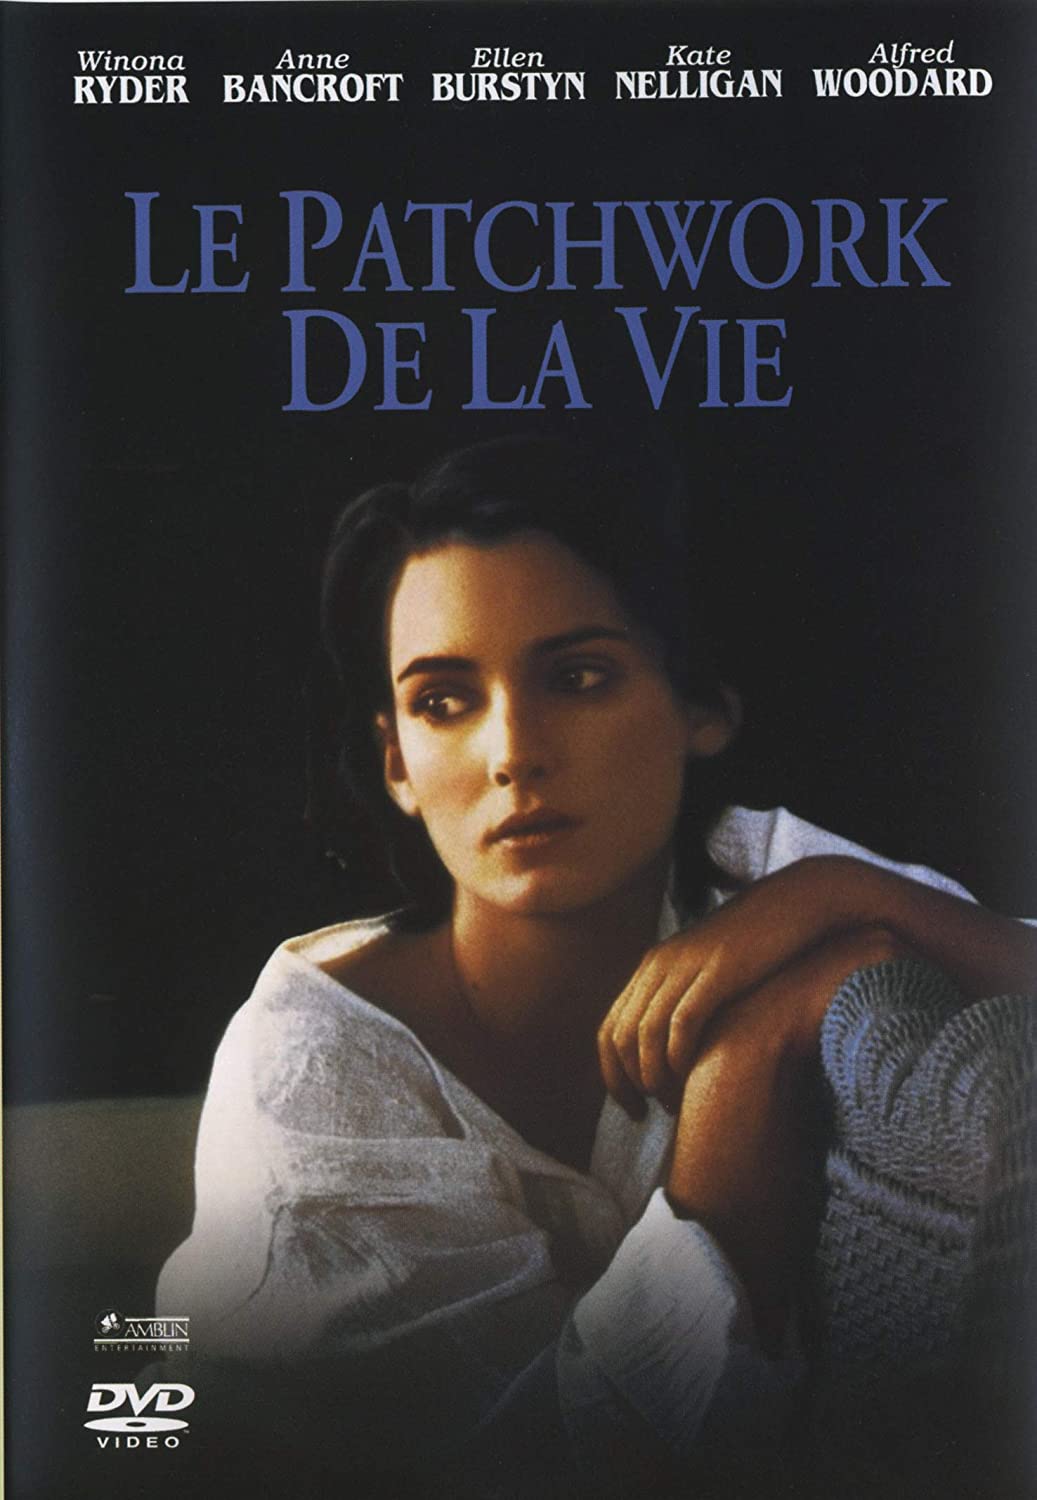 Le Patchwork de la vie (1995) - DVD